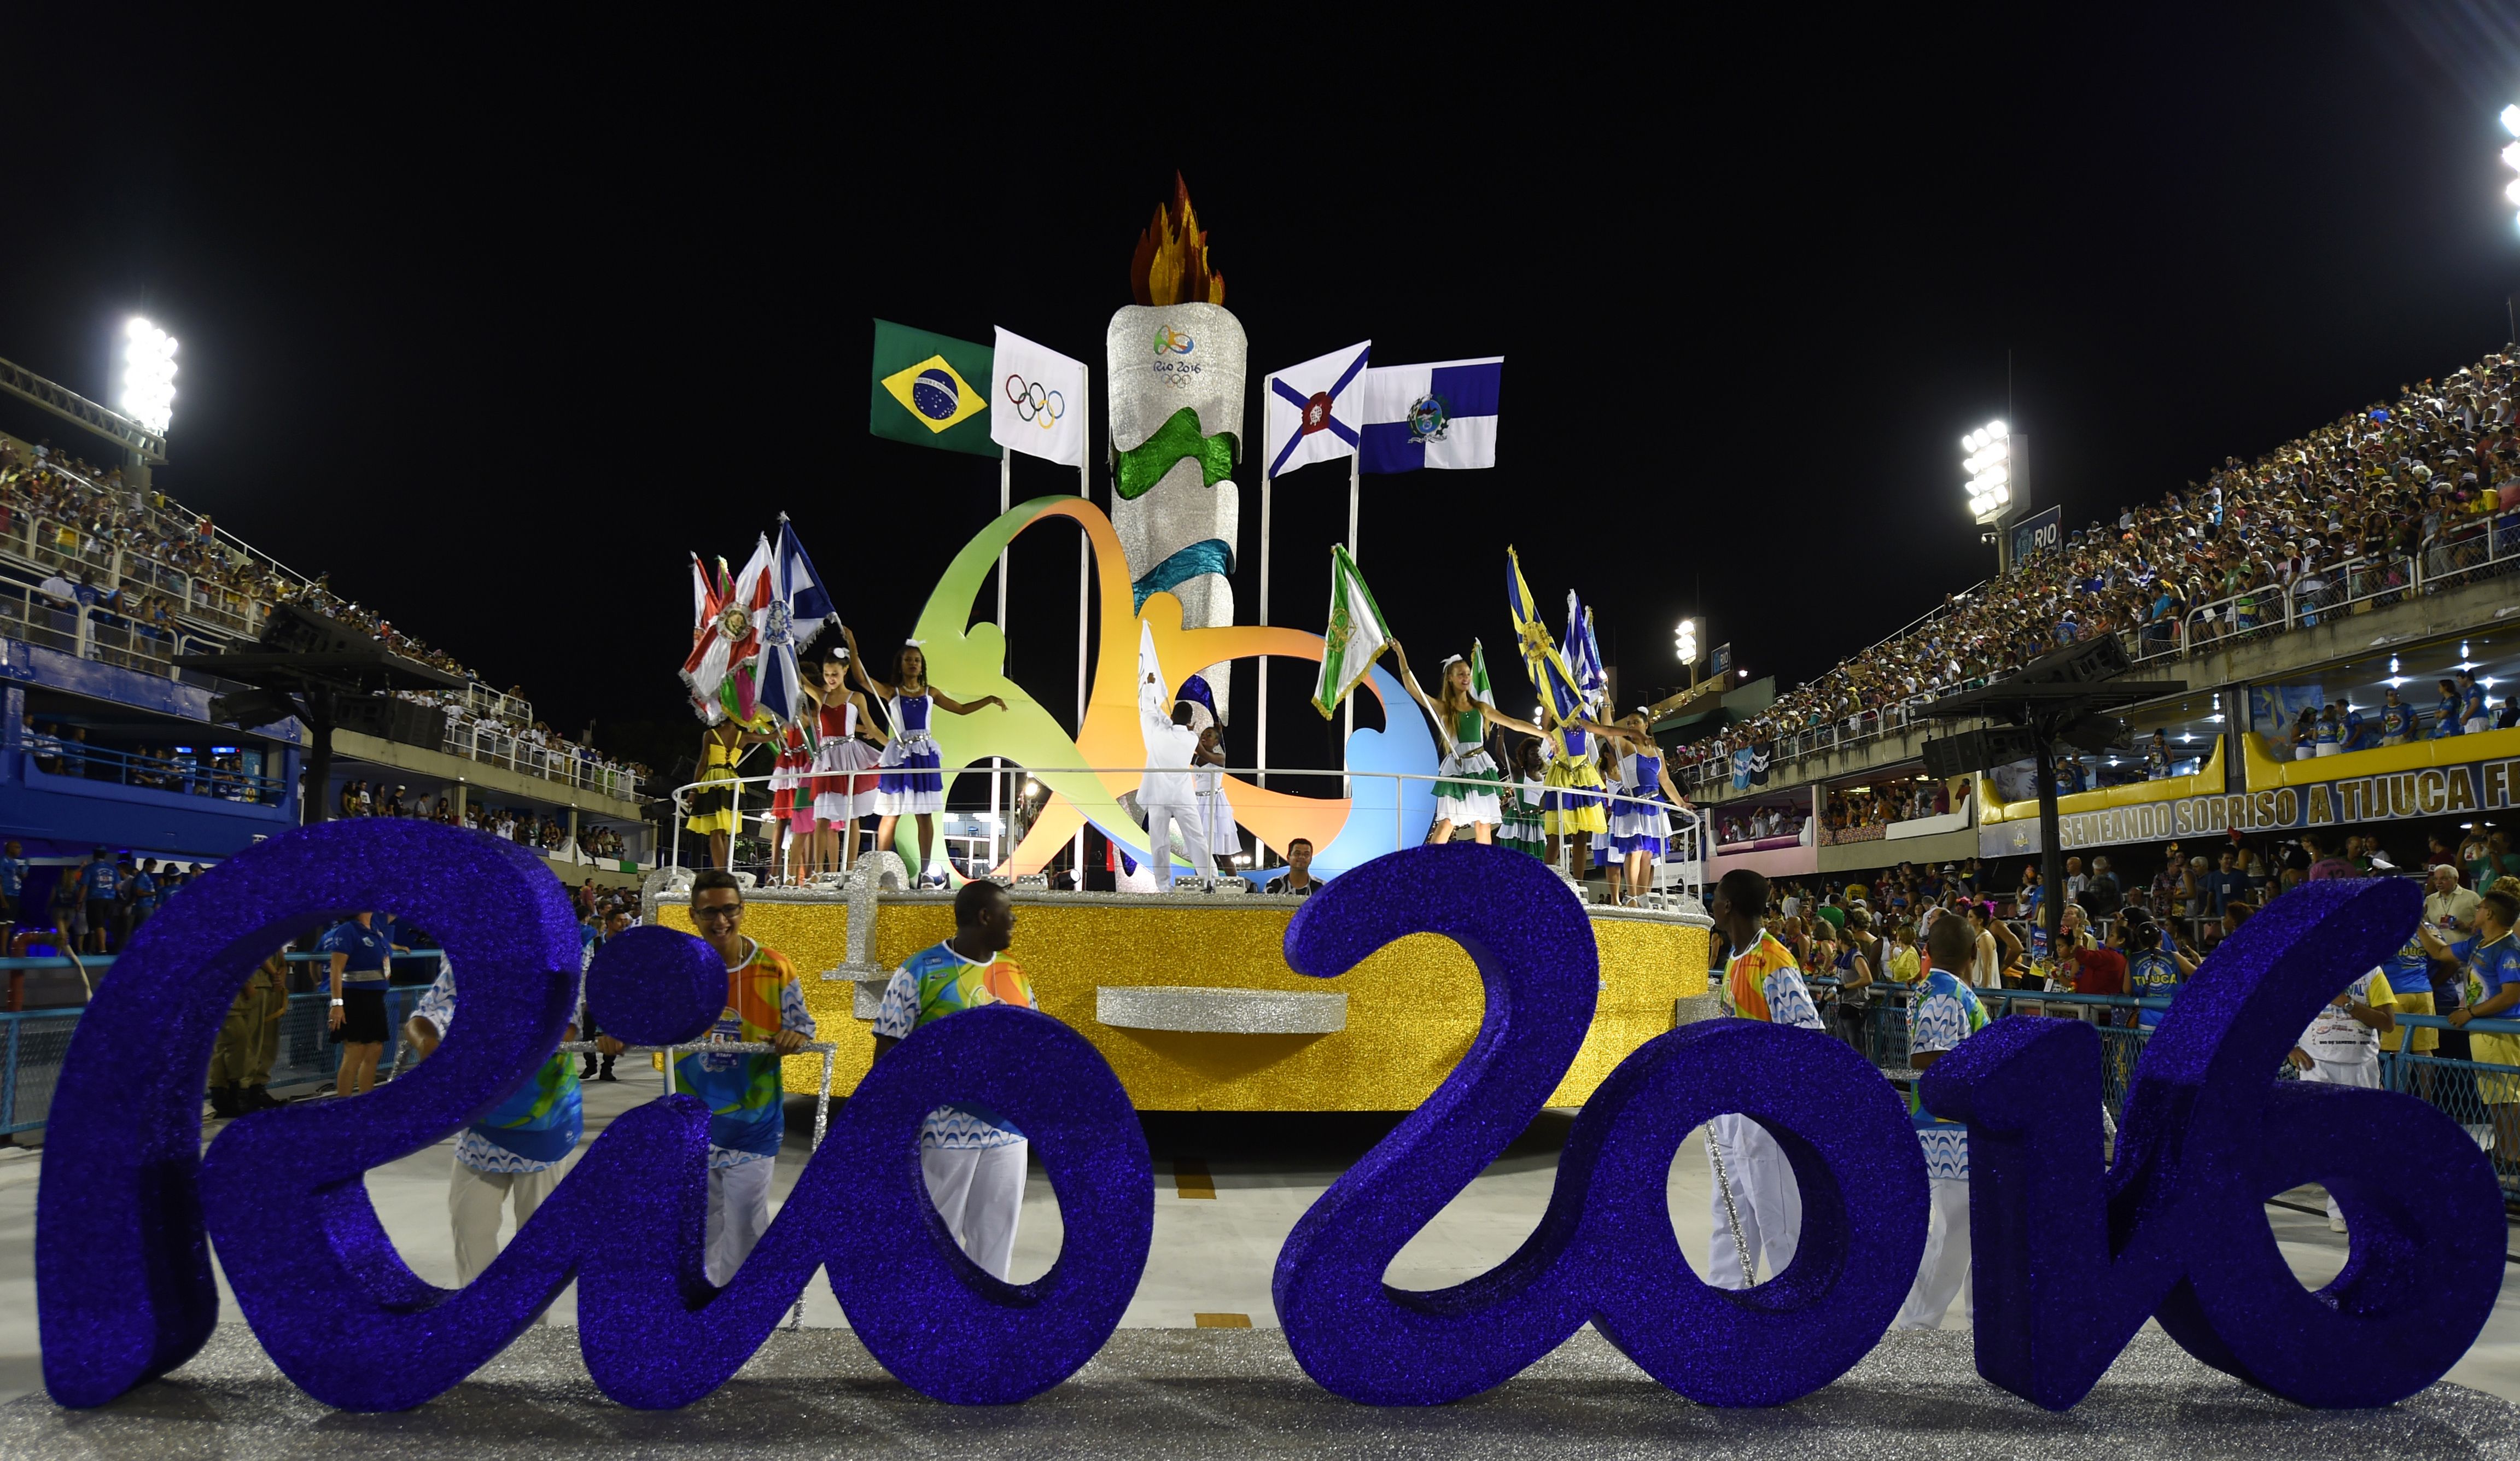 3 июня 2016 года. Олимпийские игры в Рио де Жанейро. Олимпийские объекты в Рио де Жанейро. Открытие Олимпийских игр в Рио де Жанейро 2016.